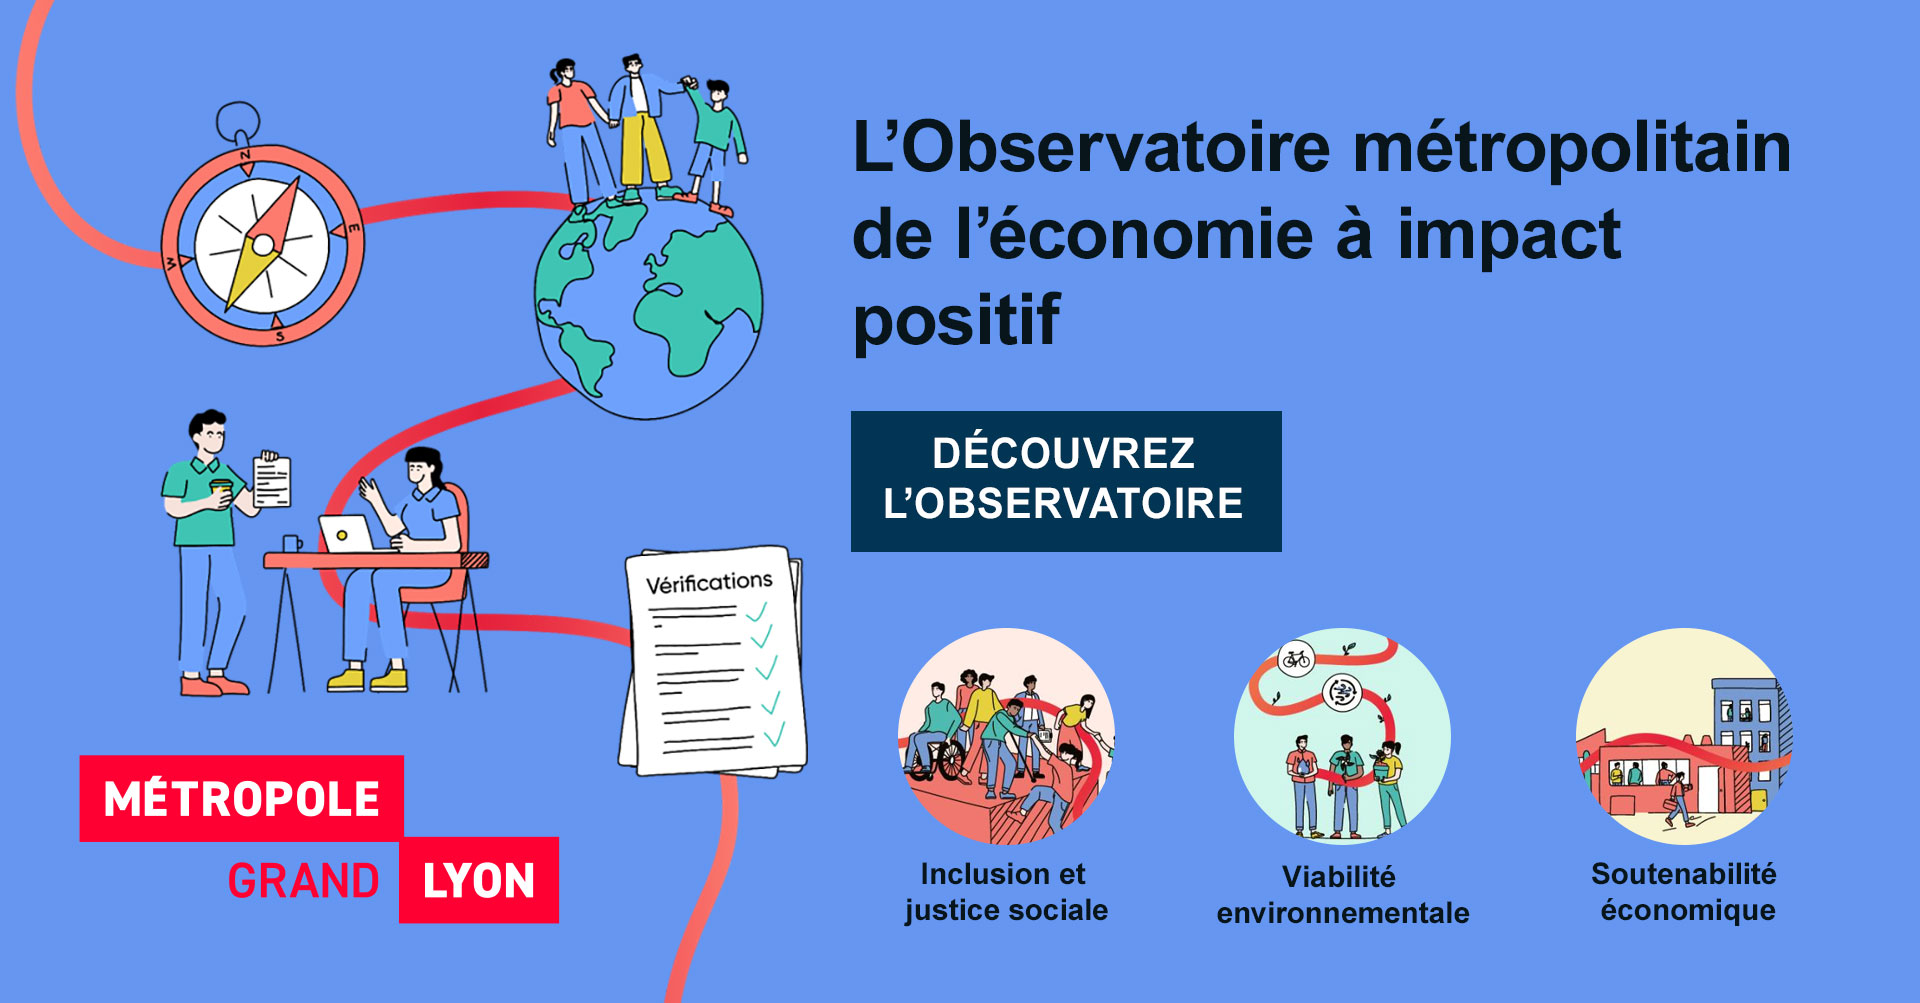 Découvrez l'Observatoire métropolitain de l’économie à impact positif de la Métropole de Lyon : inclusion et justice sociale, viabilité environnementale, soutenabilité économique